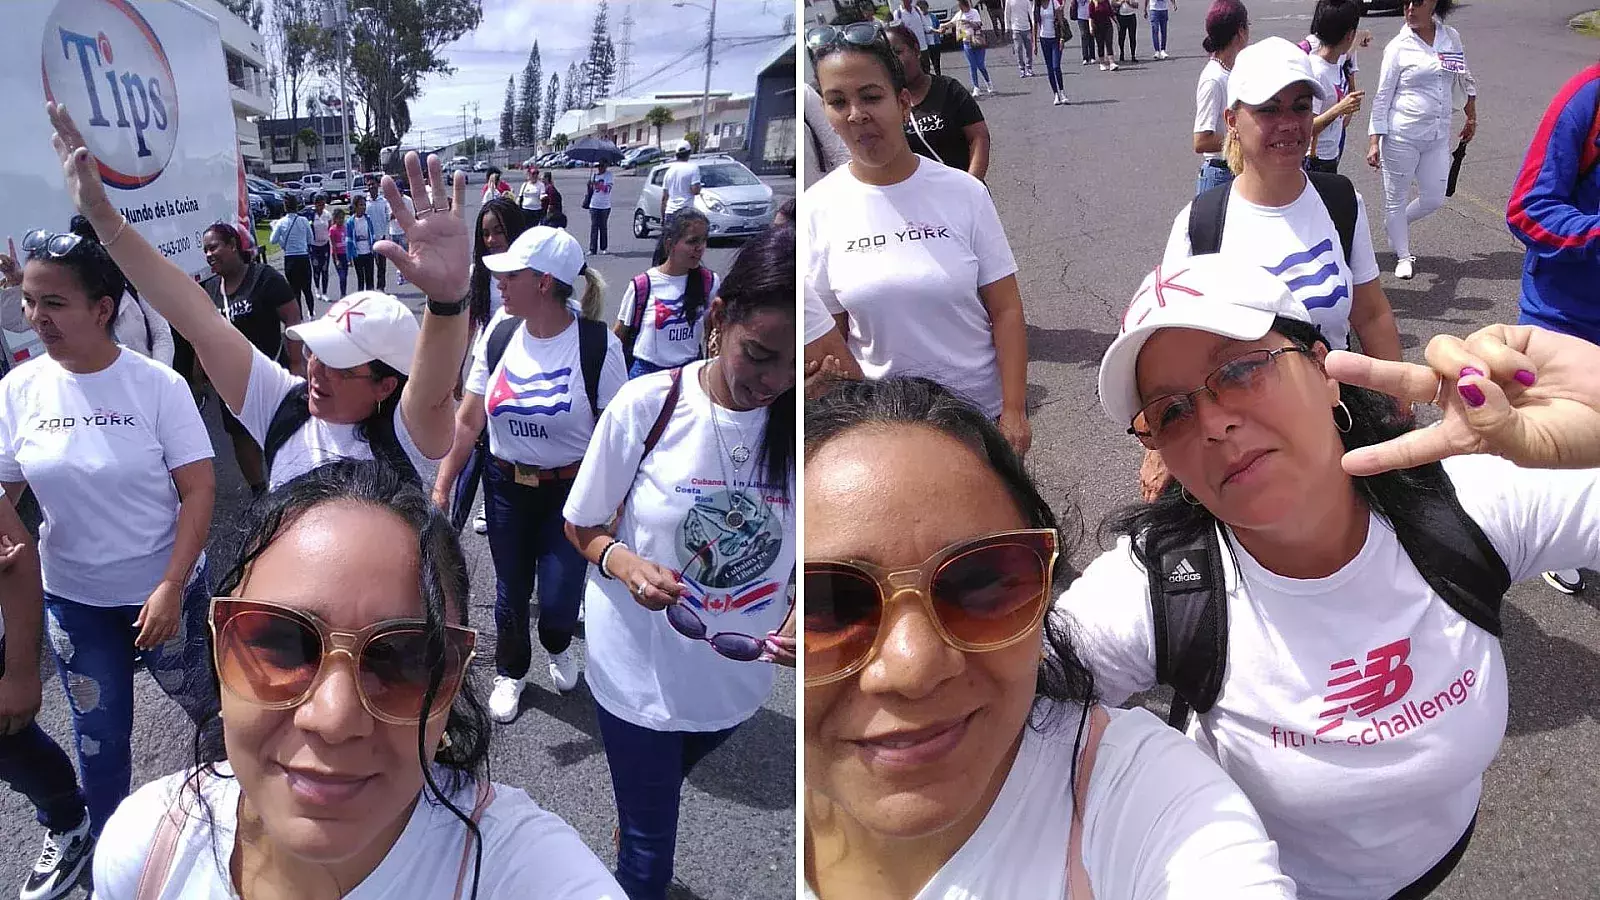 Cubanos protestan en Costa Rica